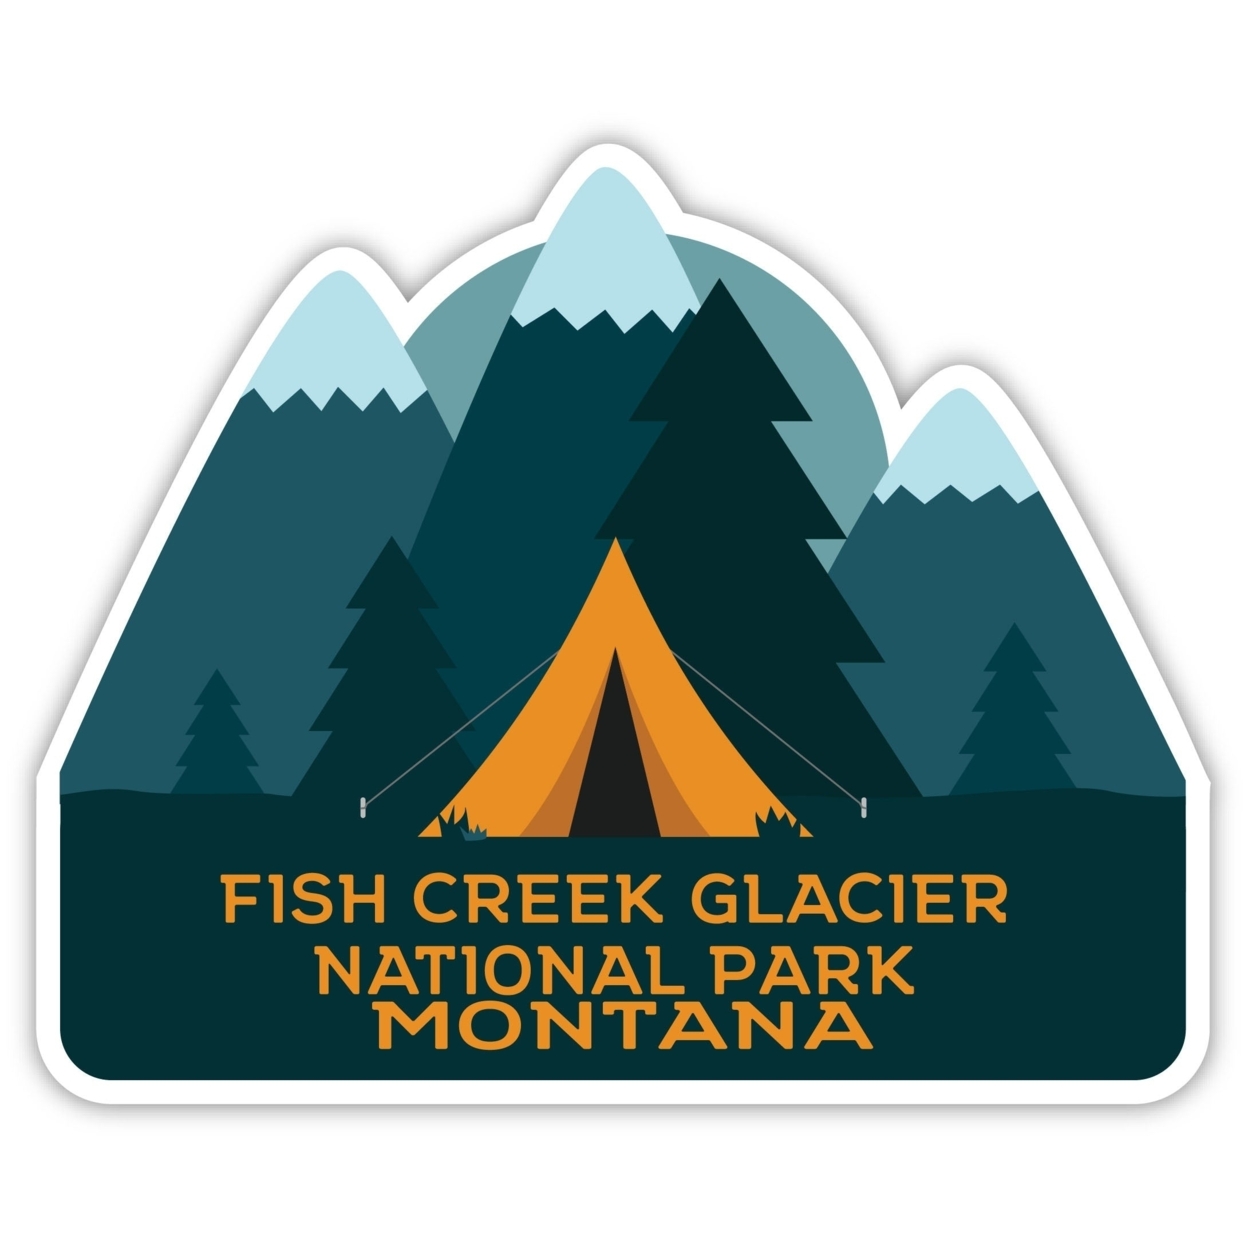 Fish Creek Glacier National Park Montana Souvenir Decorative Stickers (Choose Theme And Size) - Single Unit, 2-Inch, Tent